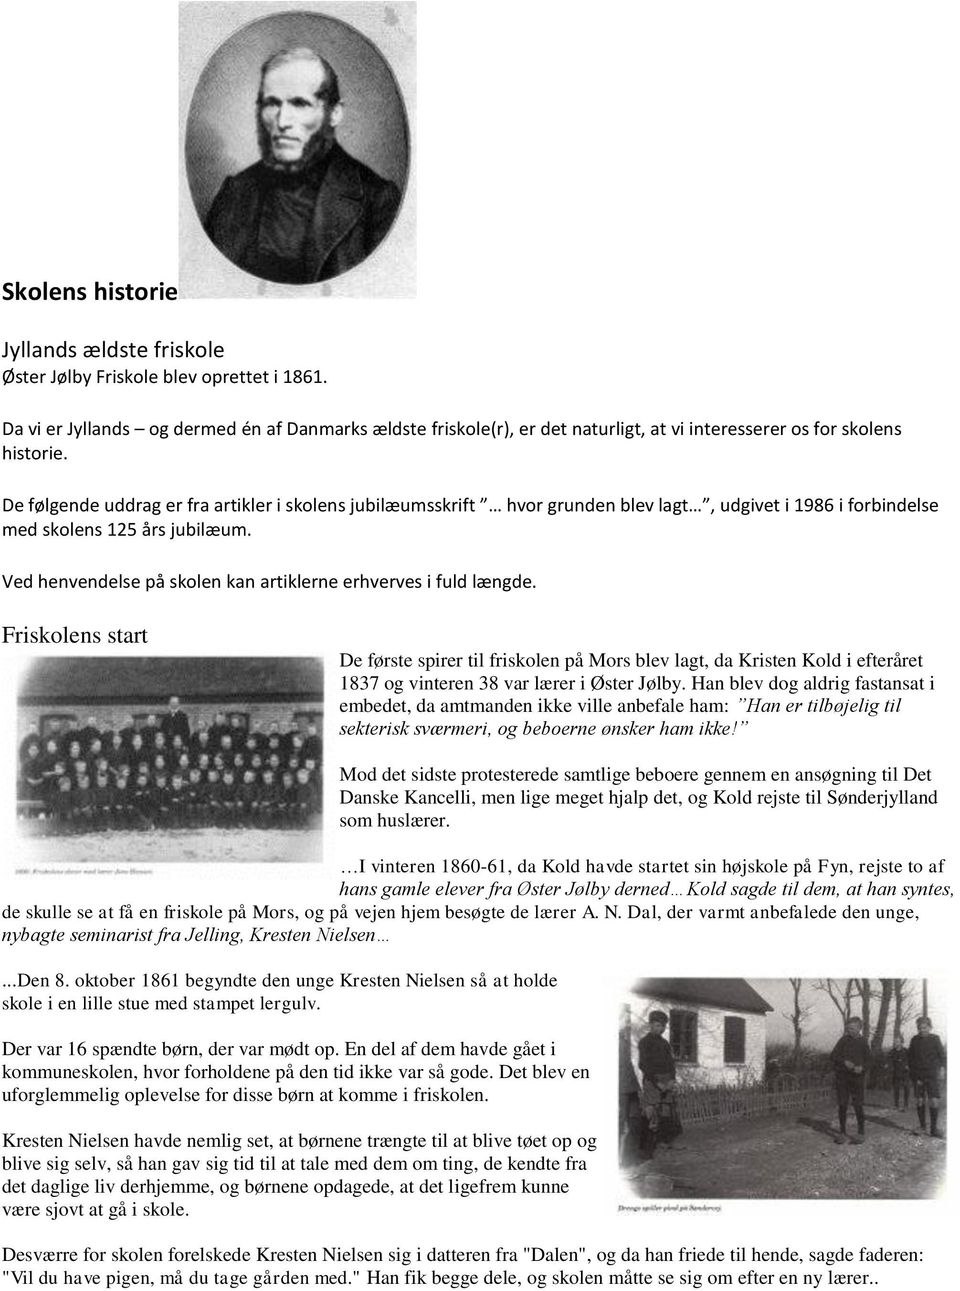 De følgende uddrag er fra artikler i skolens jubilæumsskrift hvor grunden blev lagt, udgivet i 1986 i forbindelse med skolens 125 års jubilæum.